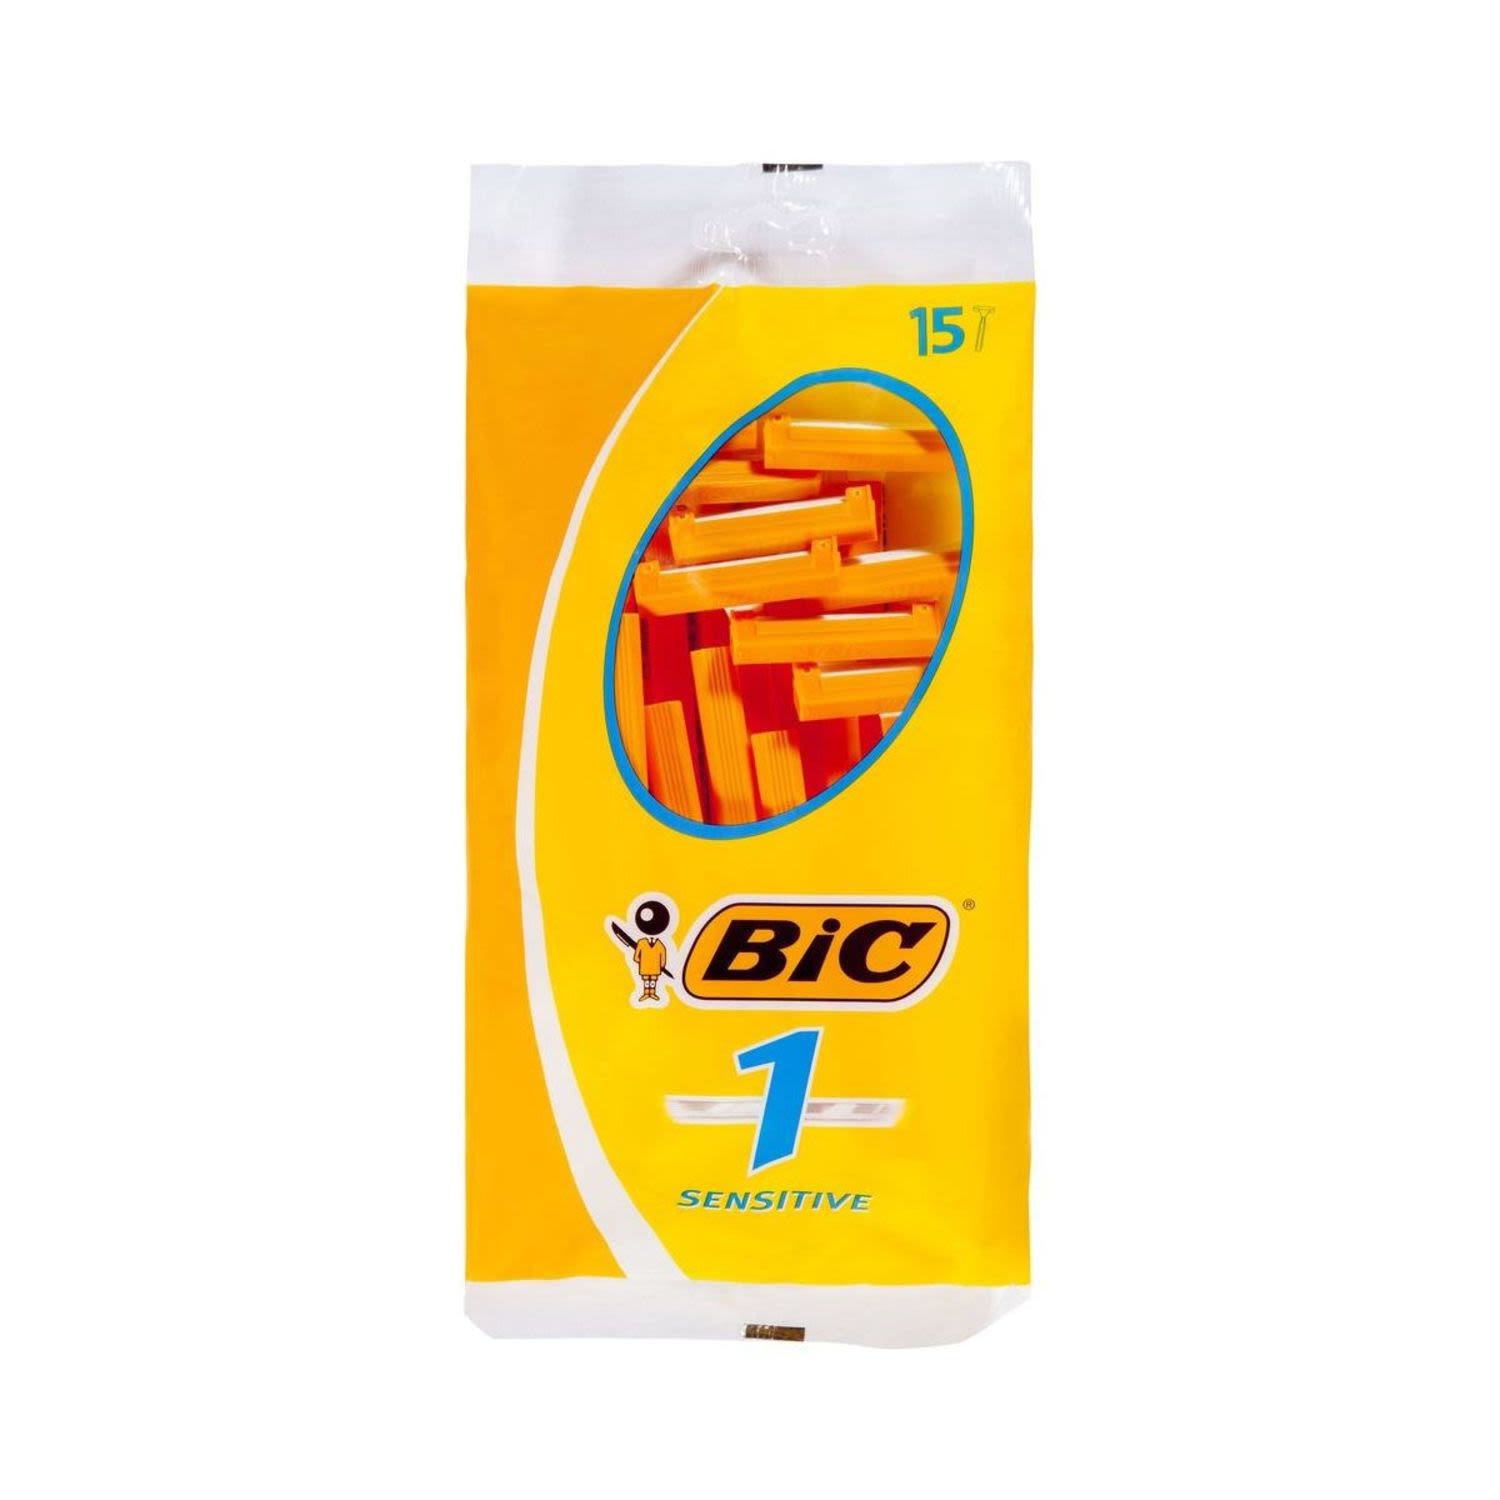 BIC Disposable Shaver Sensitive, 15 Each